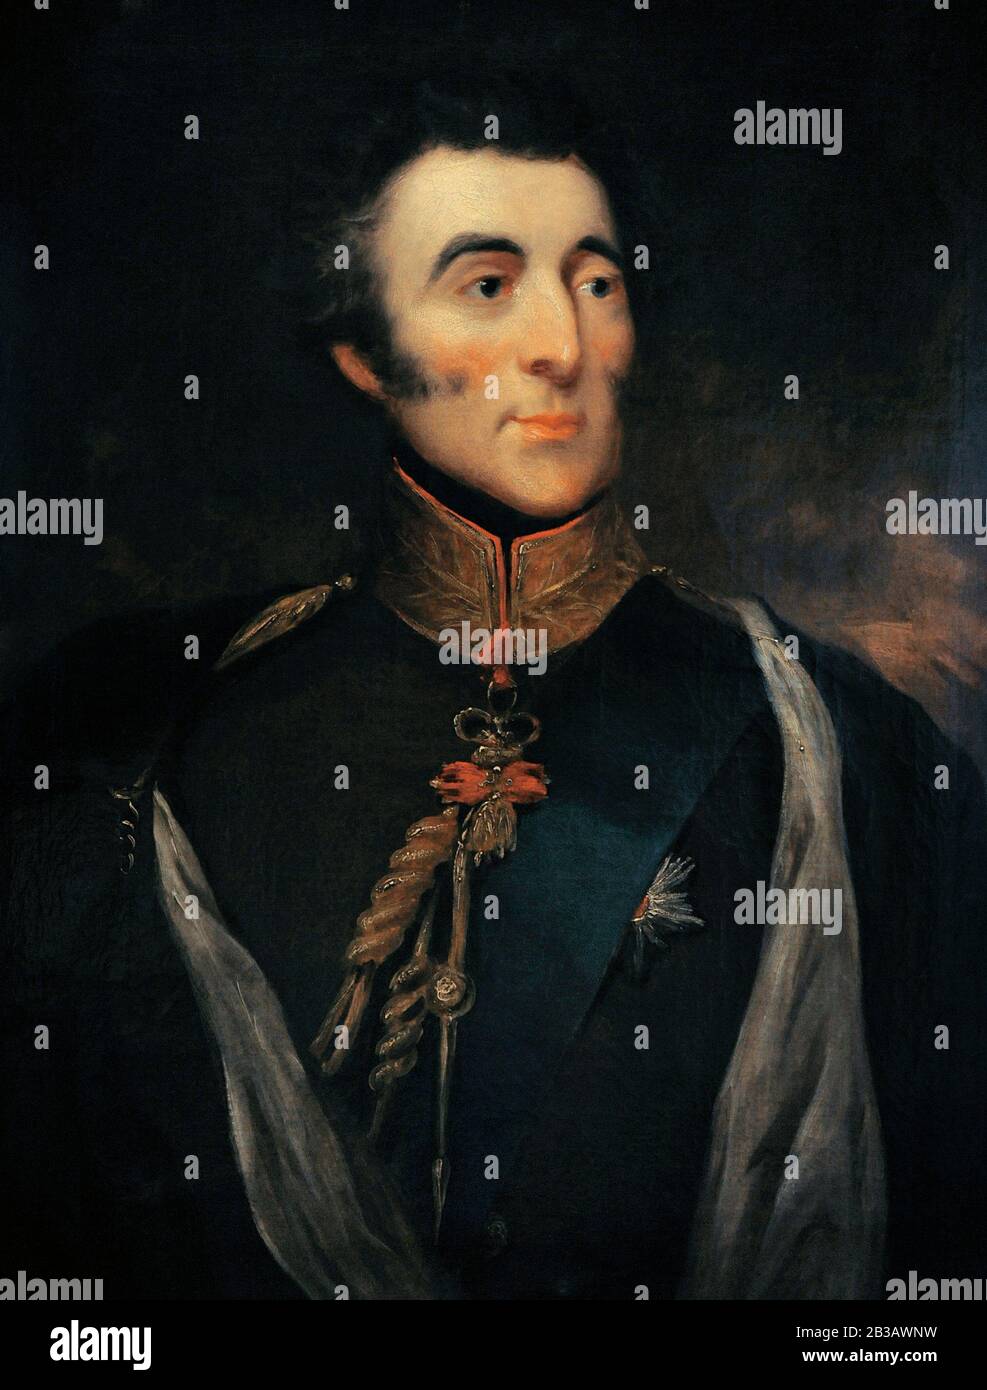 Arthur Wellesley (1769-1852). Premier duc de Wellington. Armée et Premier ministre britanniques. Portrait attribué à John Jackson (1778-1831), vers 1820-1825. Musée Lazaro Galdiano. Madrid. Espagne. Banque D'Images